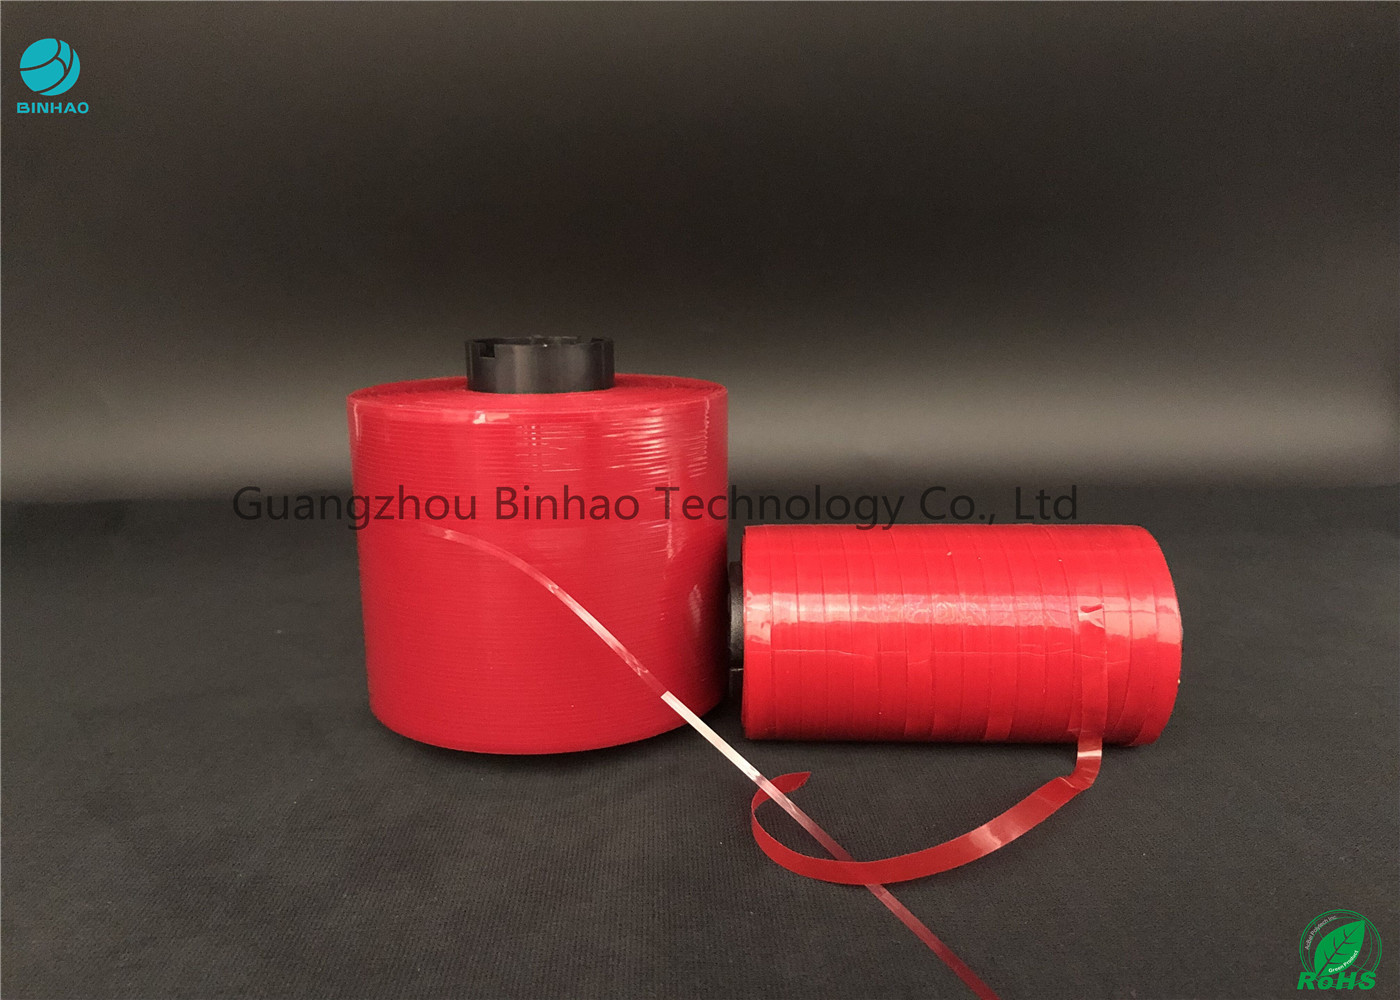 MOPP 물질 본인 - 카톤 박스를 위한 점착성 까다로운 개봉 테프 쉬운 컬러 빨강 5 밀리미터 폭